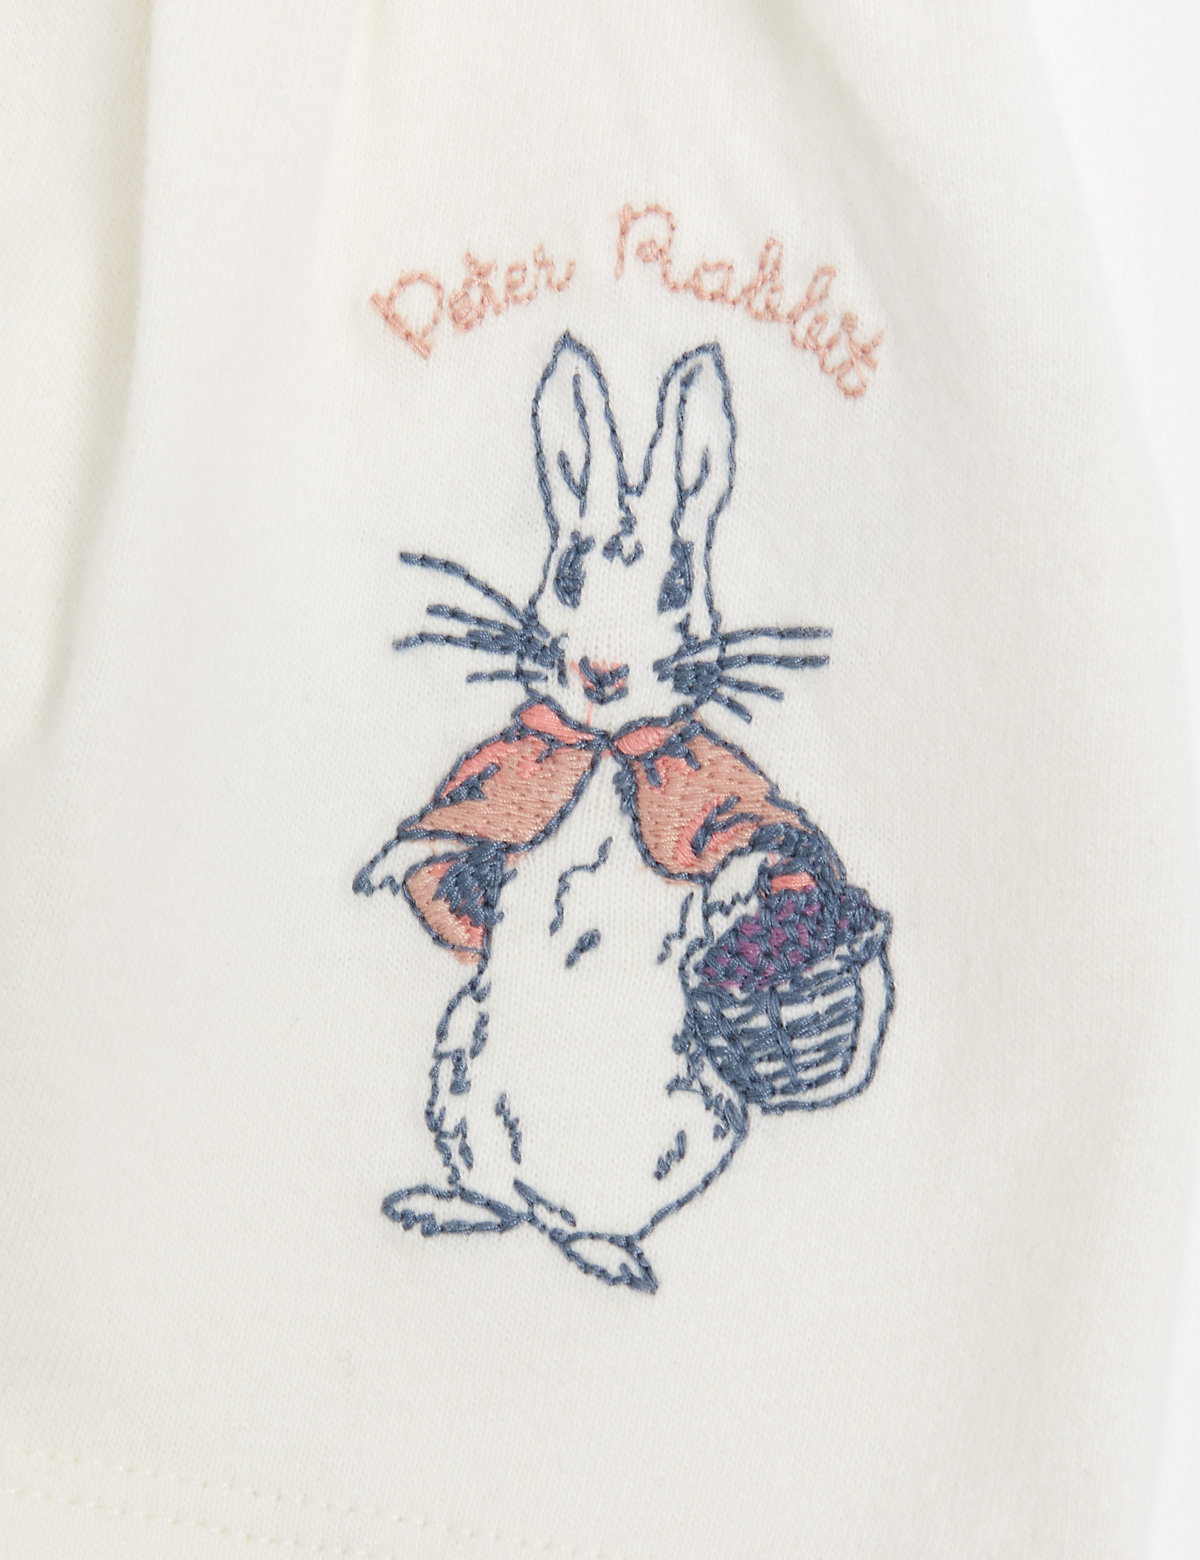 2pc Cotton Rich Peter Rabbit™ Outfit